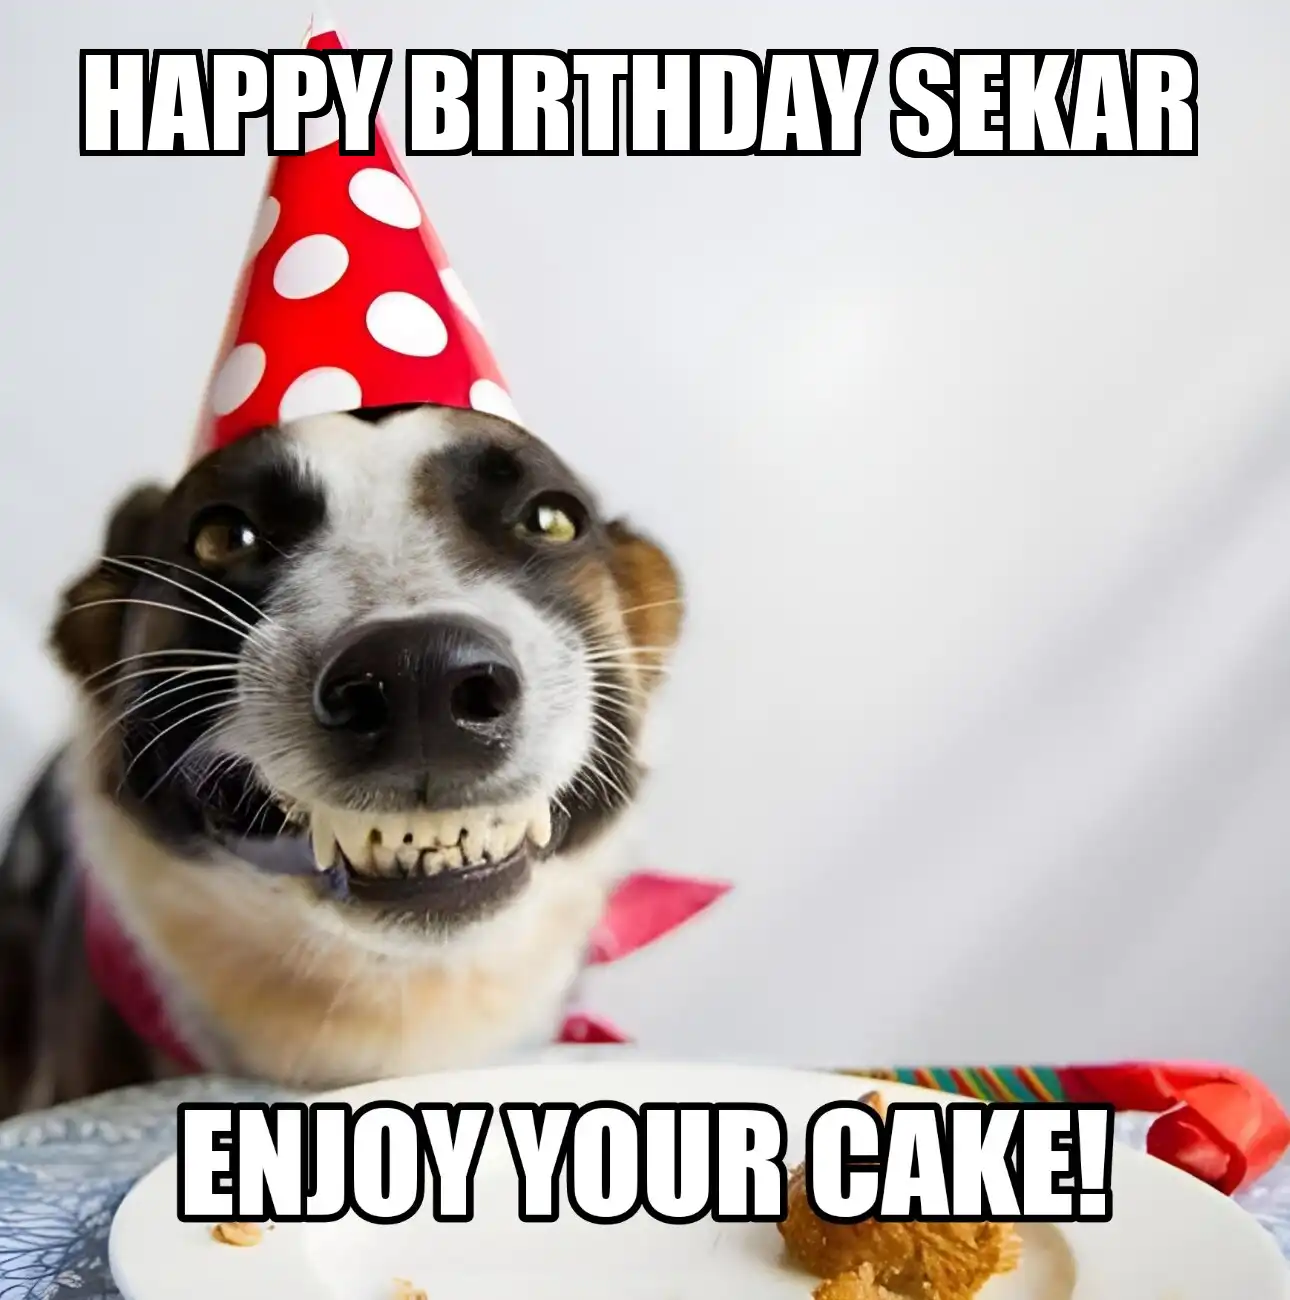 Happy Birthday Sekar Enjoy Your Cake Dog Meme